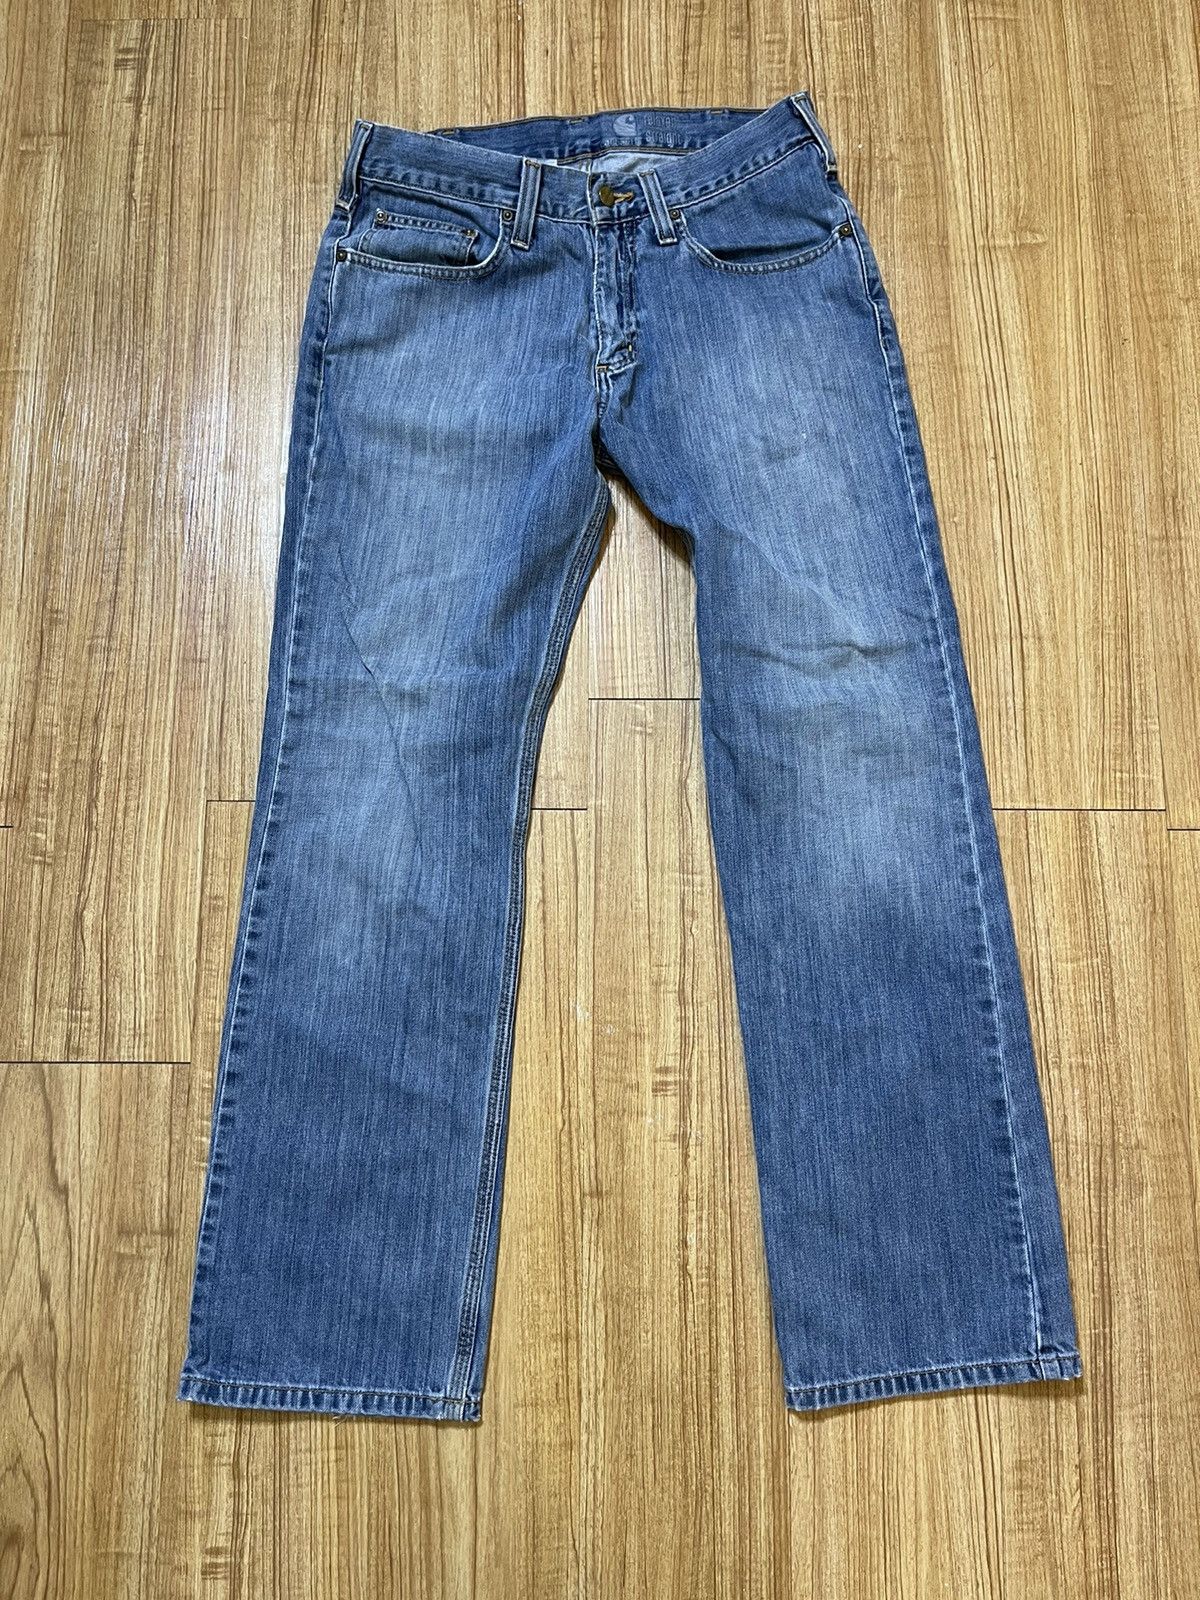 Carhartt Blue Carhartt jean pants Size US 32 / EU 48 - 1 Preview